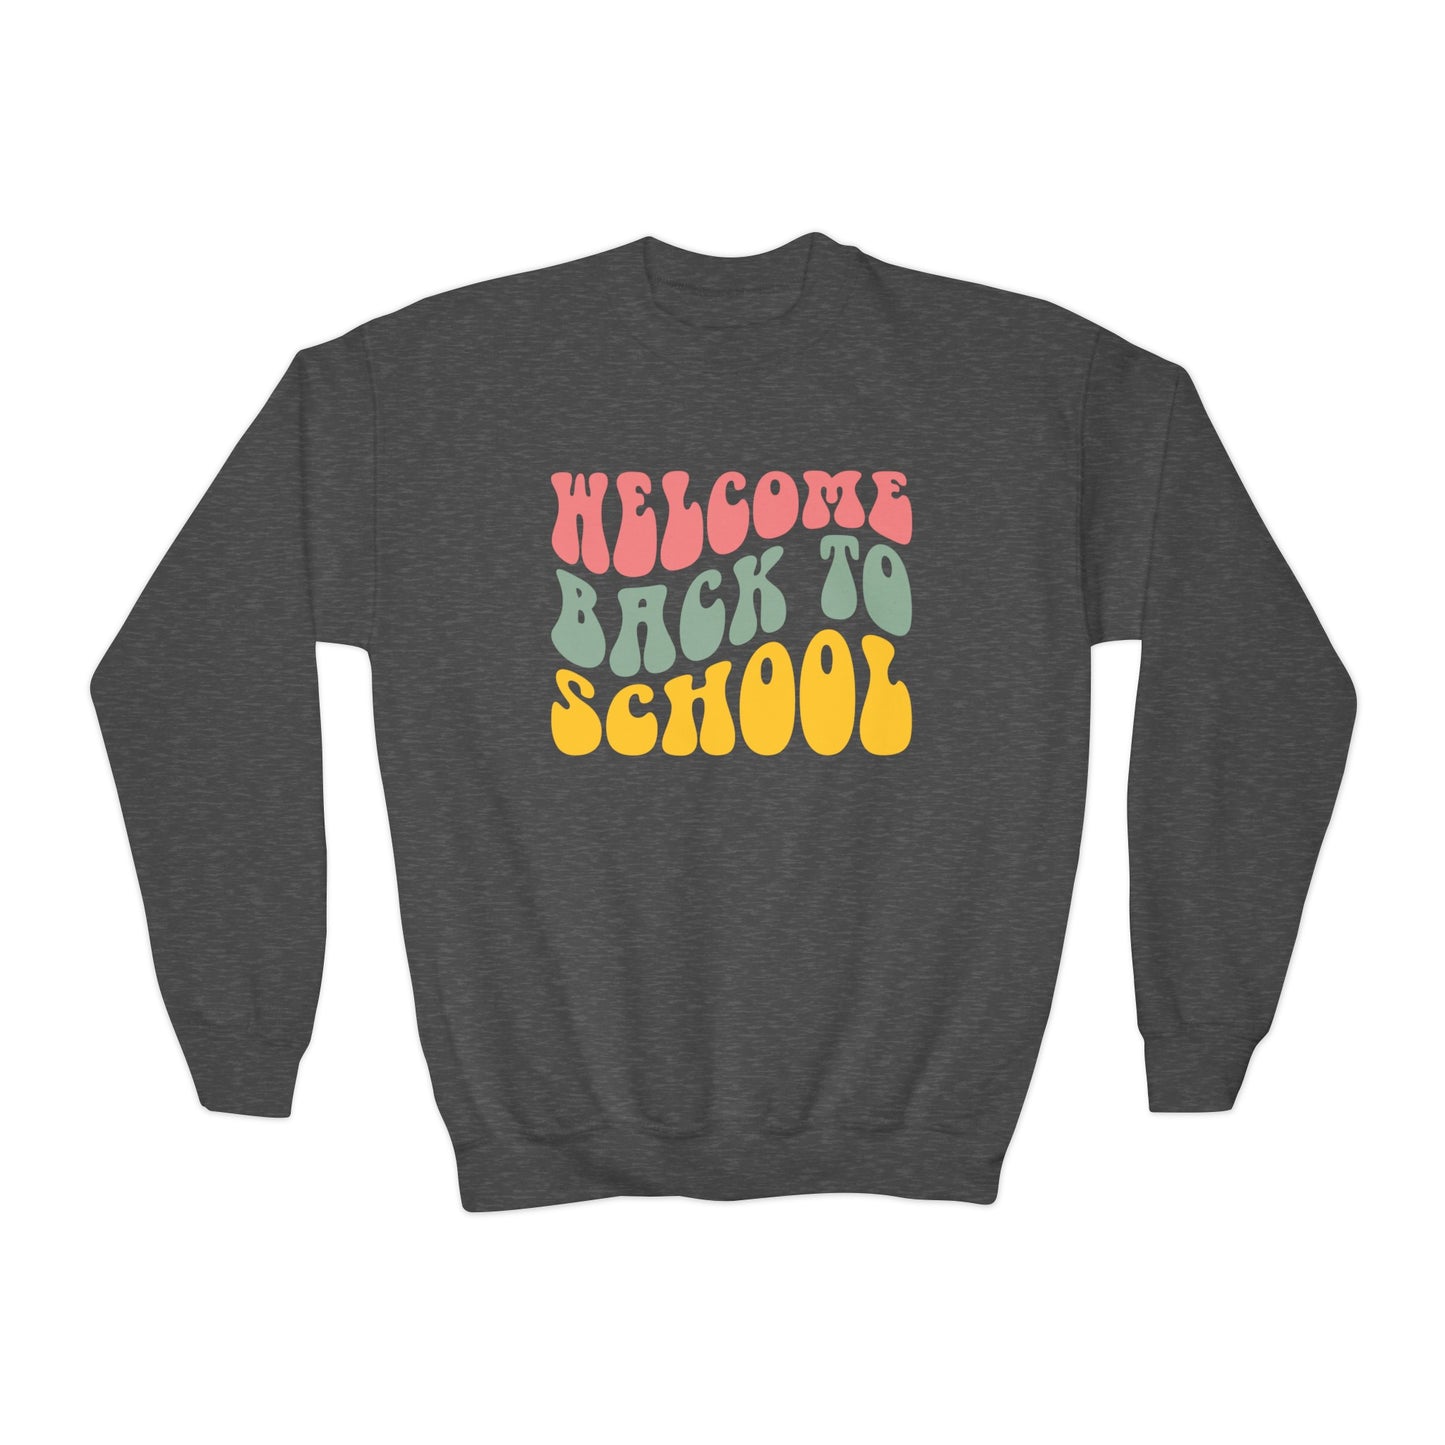 Welcome back to school sweatshirt for children